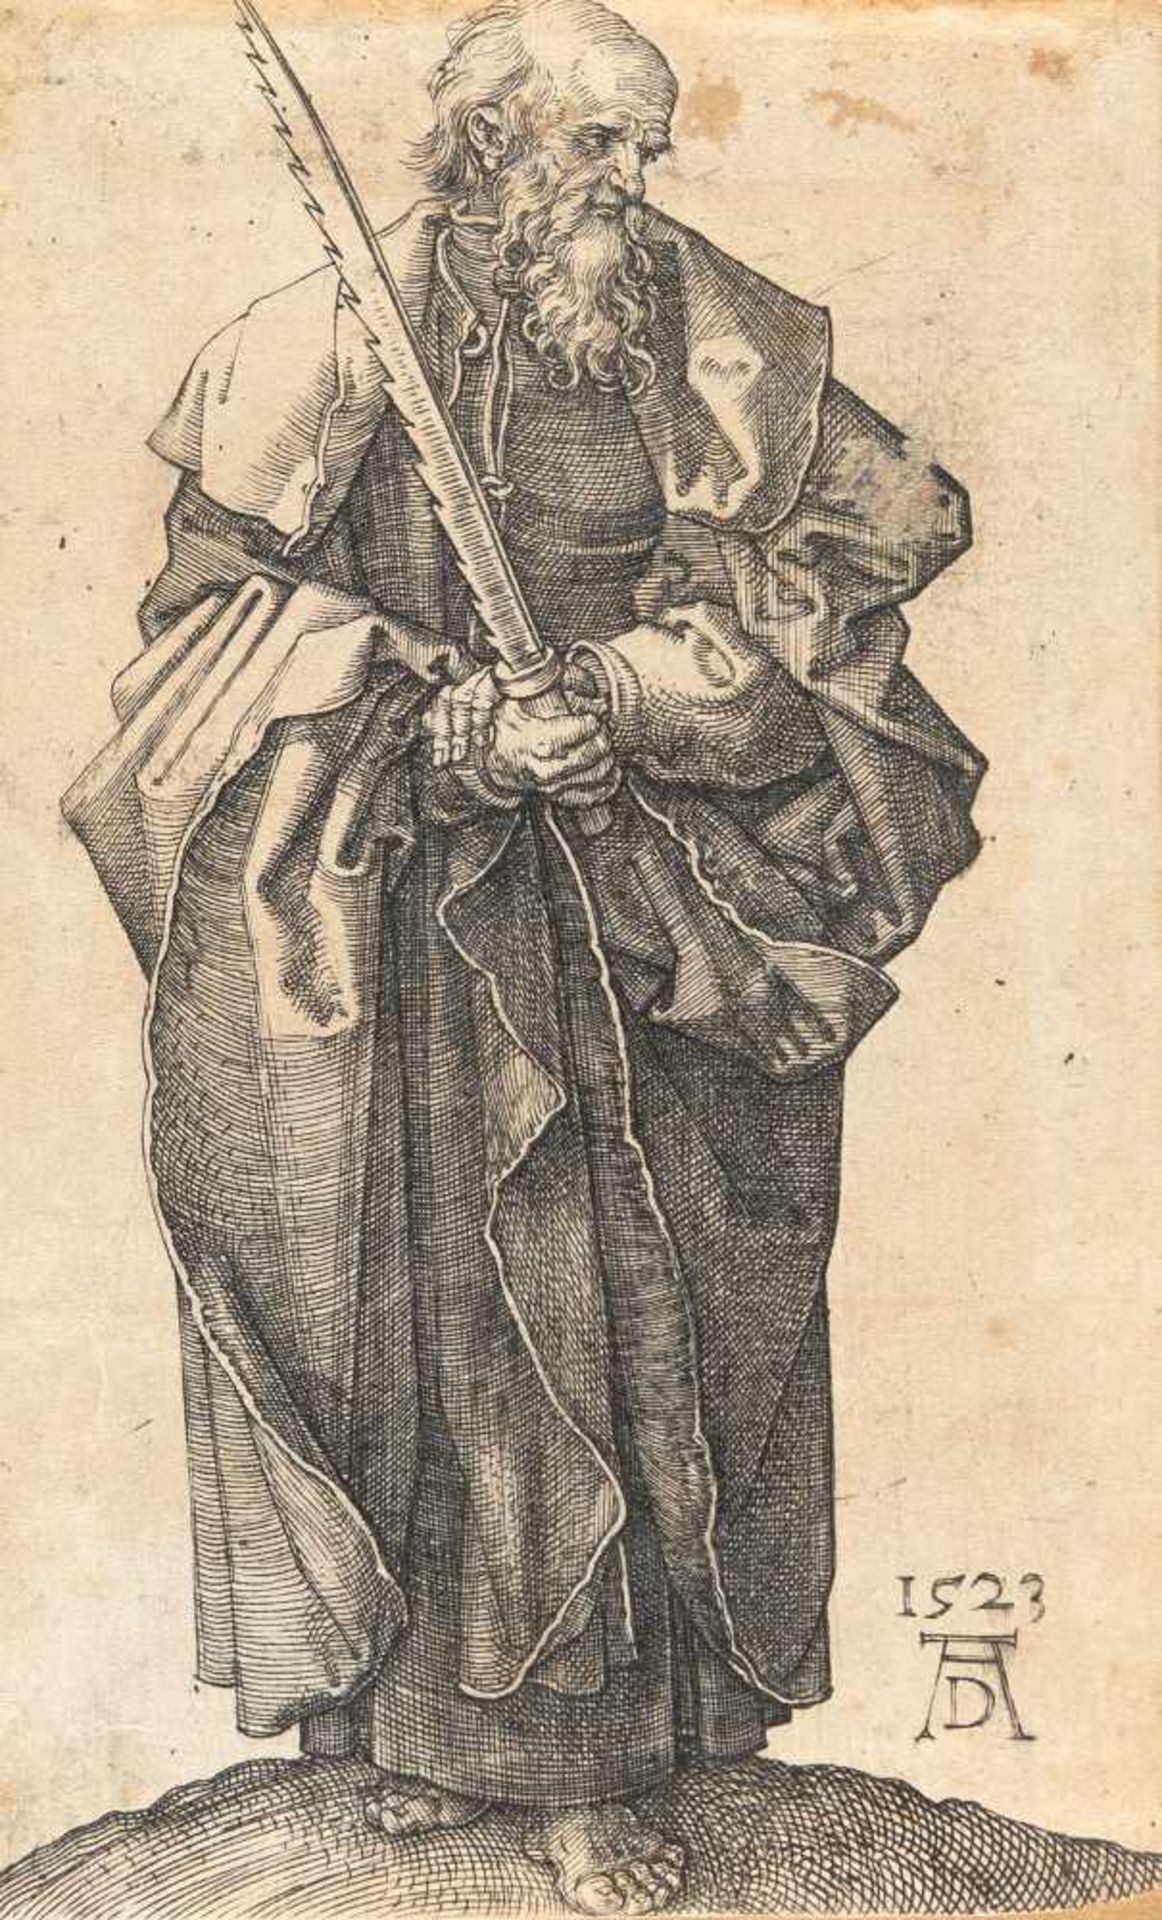 Albrecht Dürer1471 - Nuremberg - 1528Der Apostel SimonKupferstich auf Bütten. (1523). 11,6 x 7,2